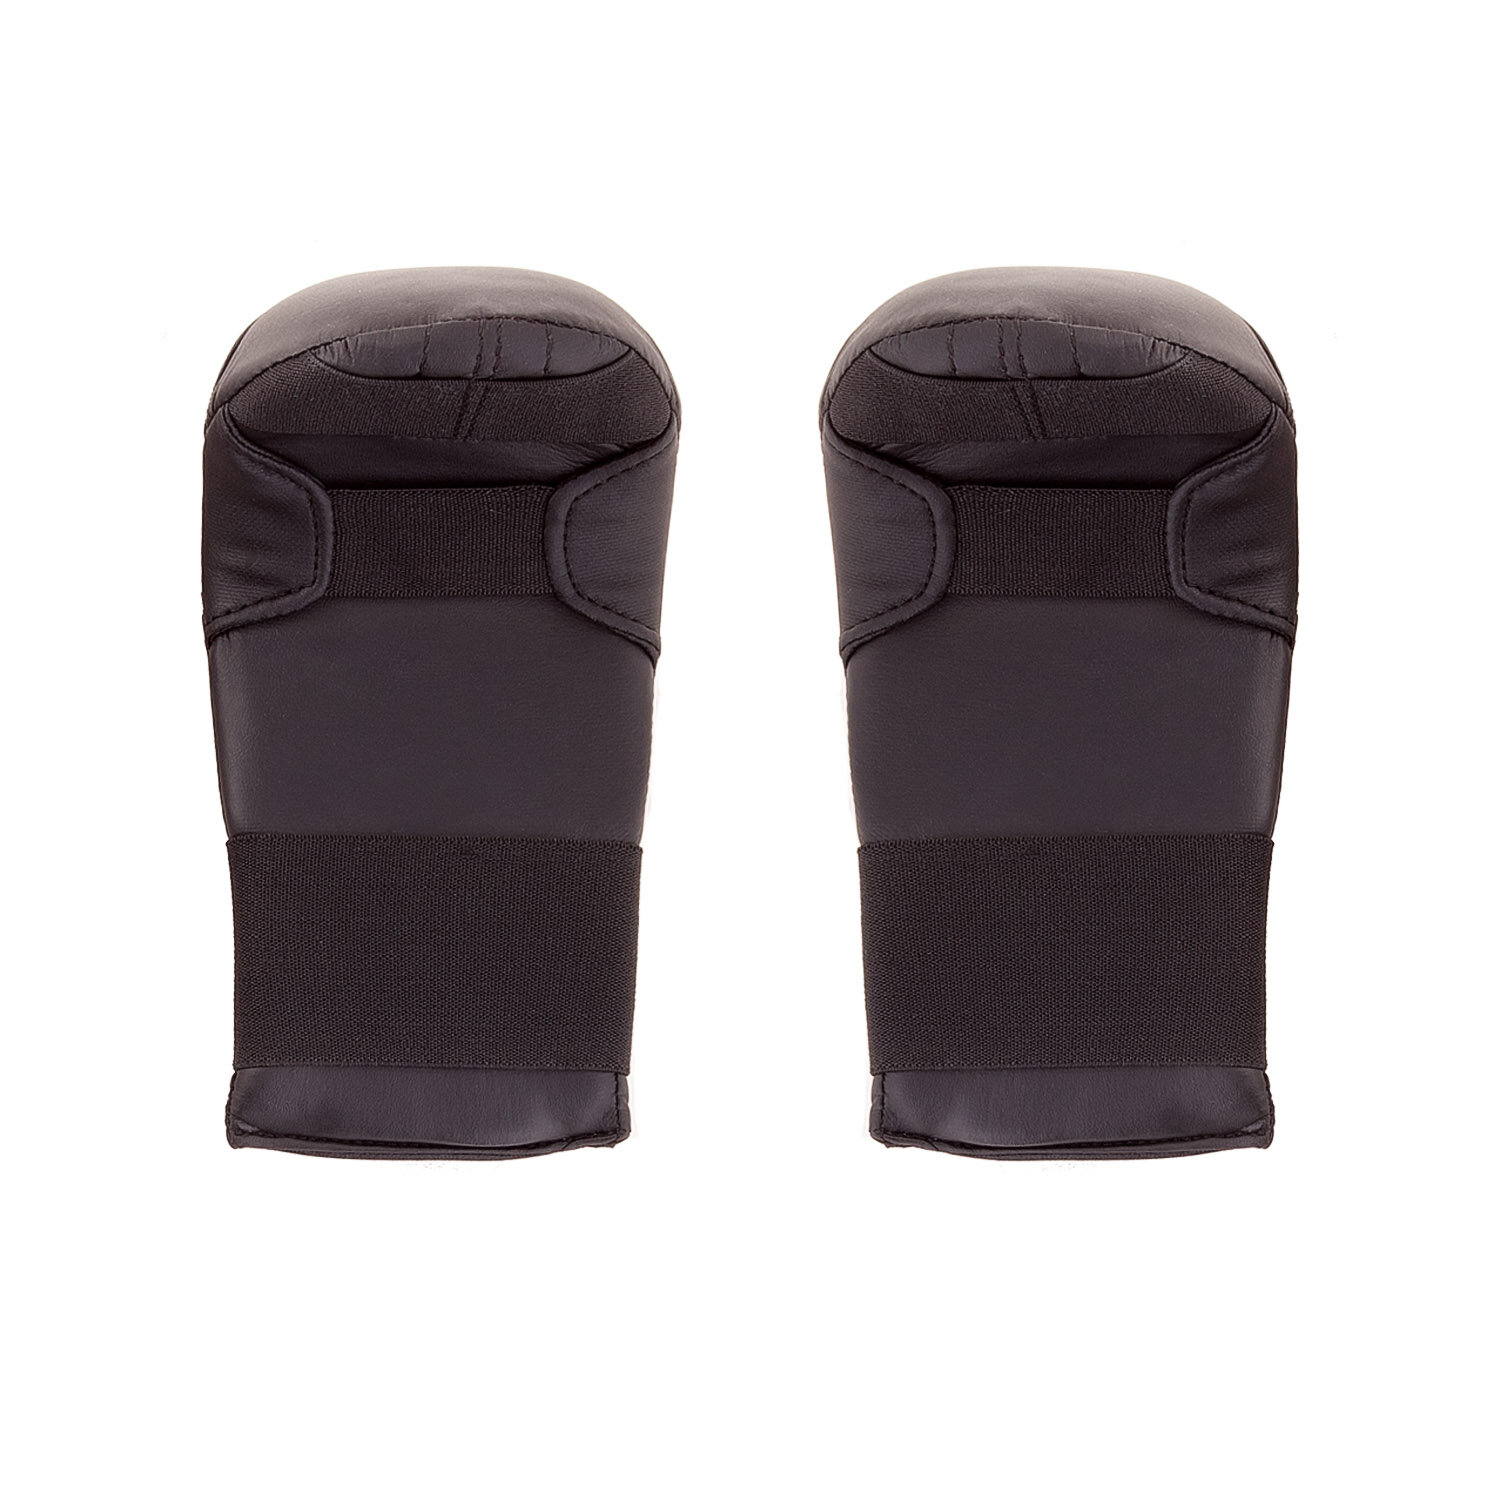 Спарринговые перчатки для каратэ Roomaif Rkm-260 пу черные размер XL